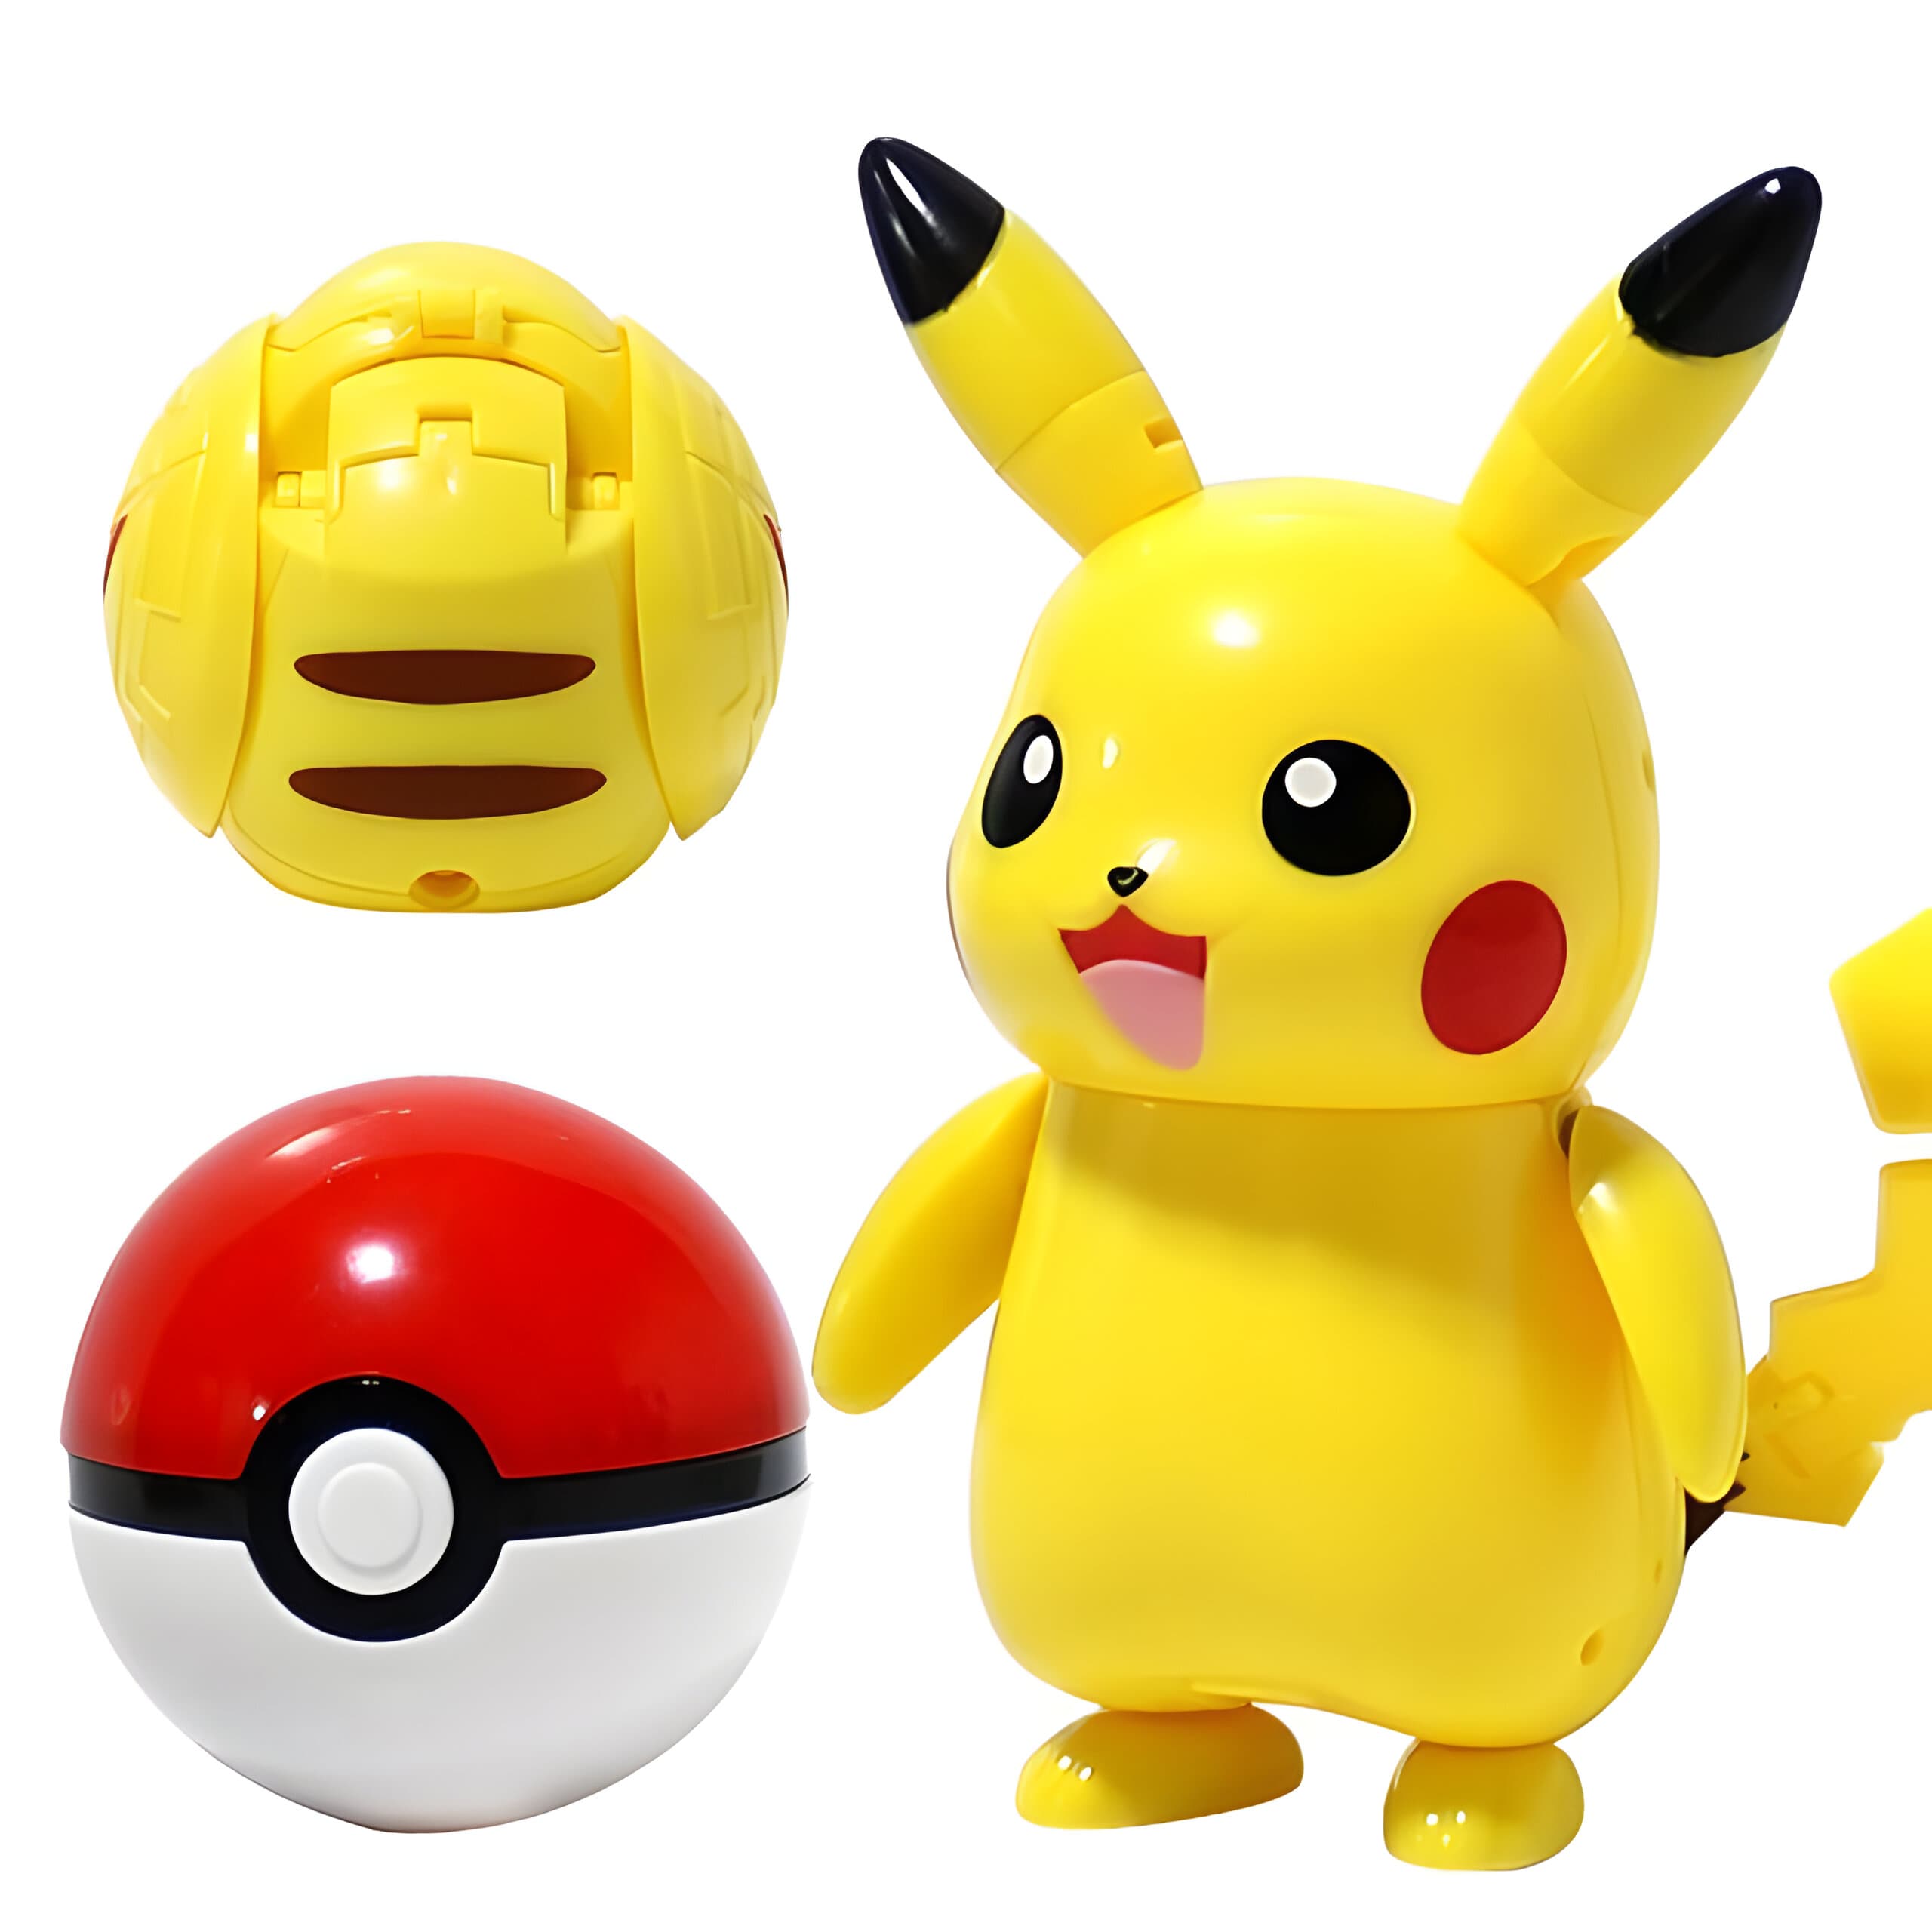 Figurine Jouet Pokémon Deformatio Pikachu Jenny Charizard Tortank Mewtwo